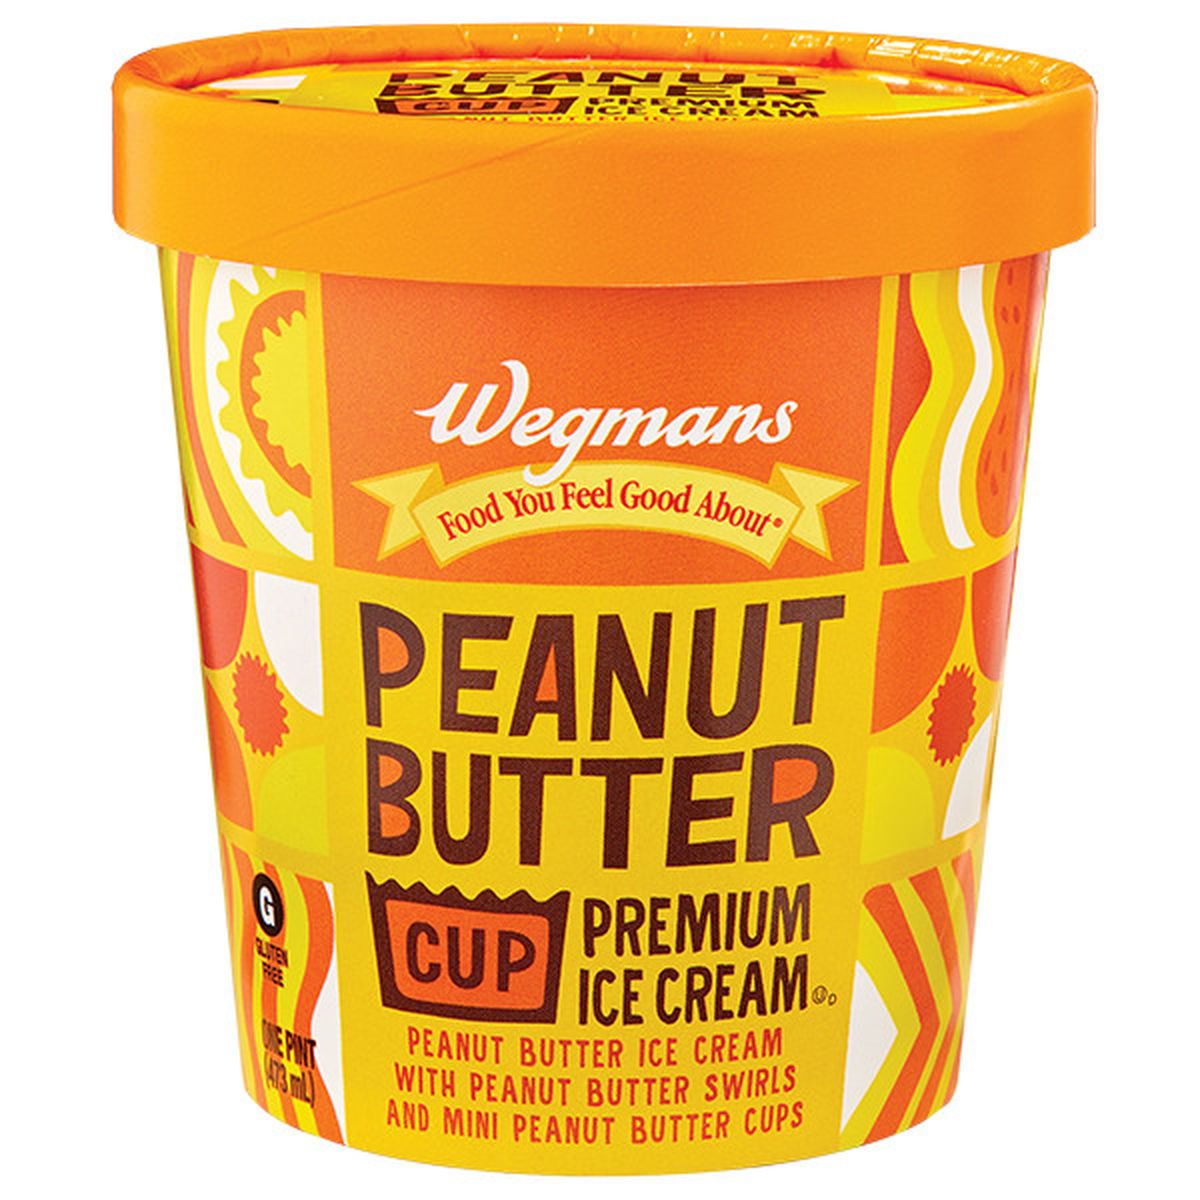 Calories in Wegmans Peanut Butter Cup Premium Ice Cream